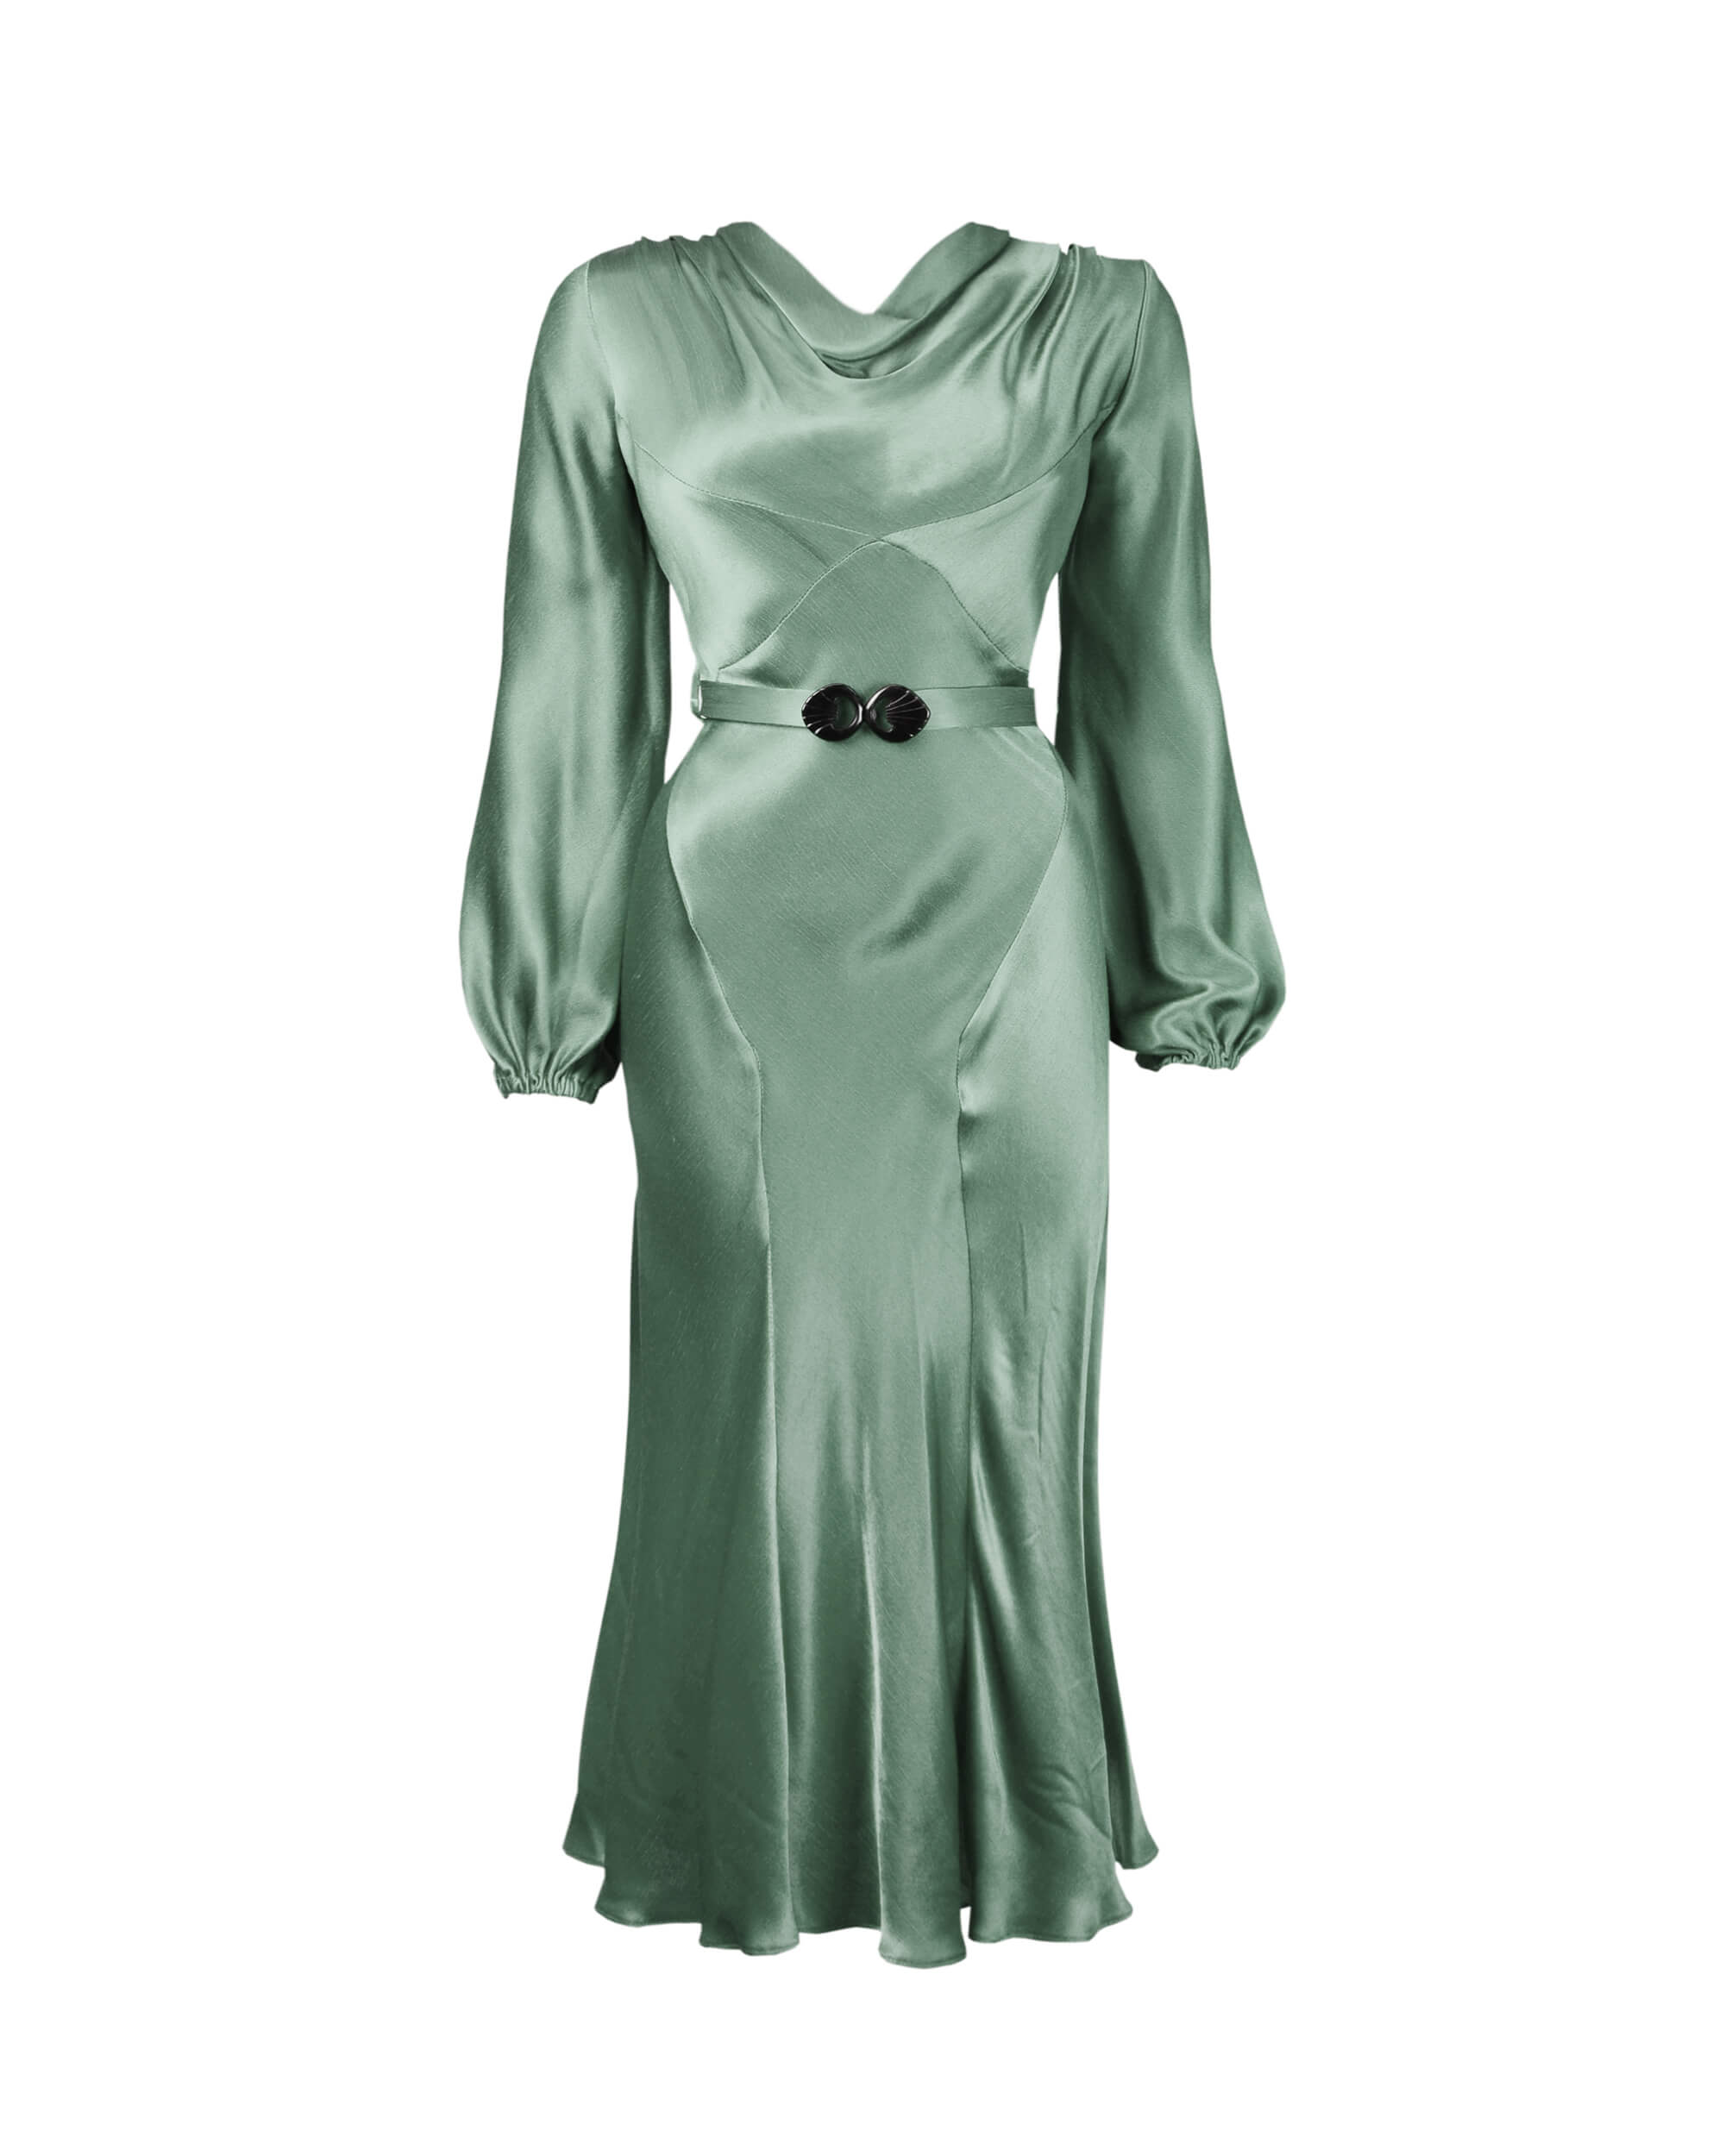 VPOD Vintage 1930s Bias Cut Lame Evening Gown